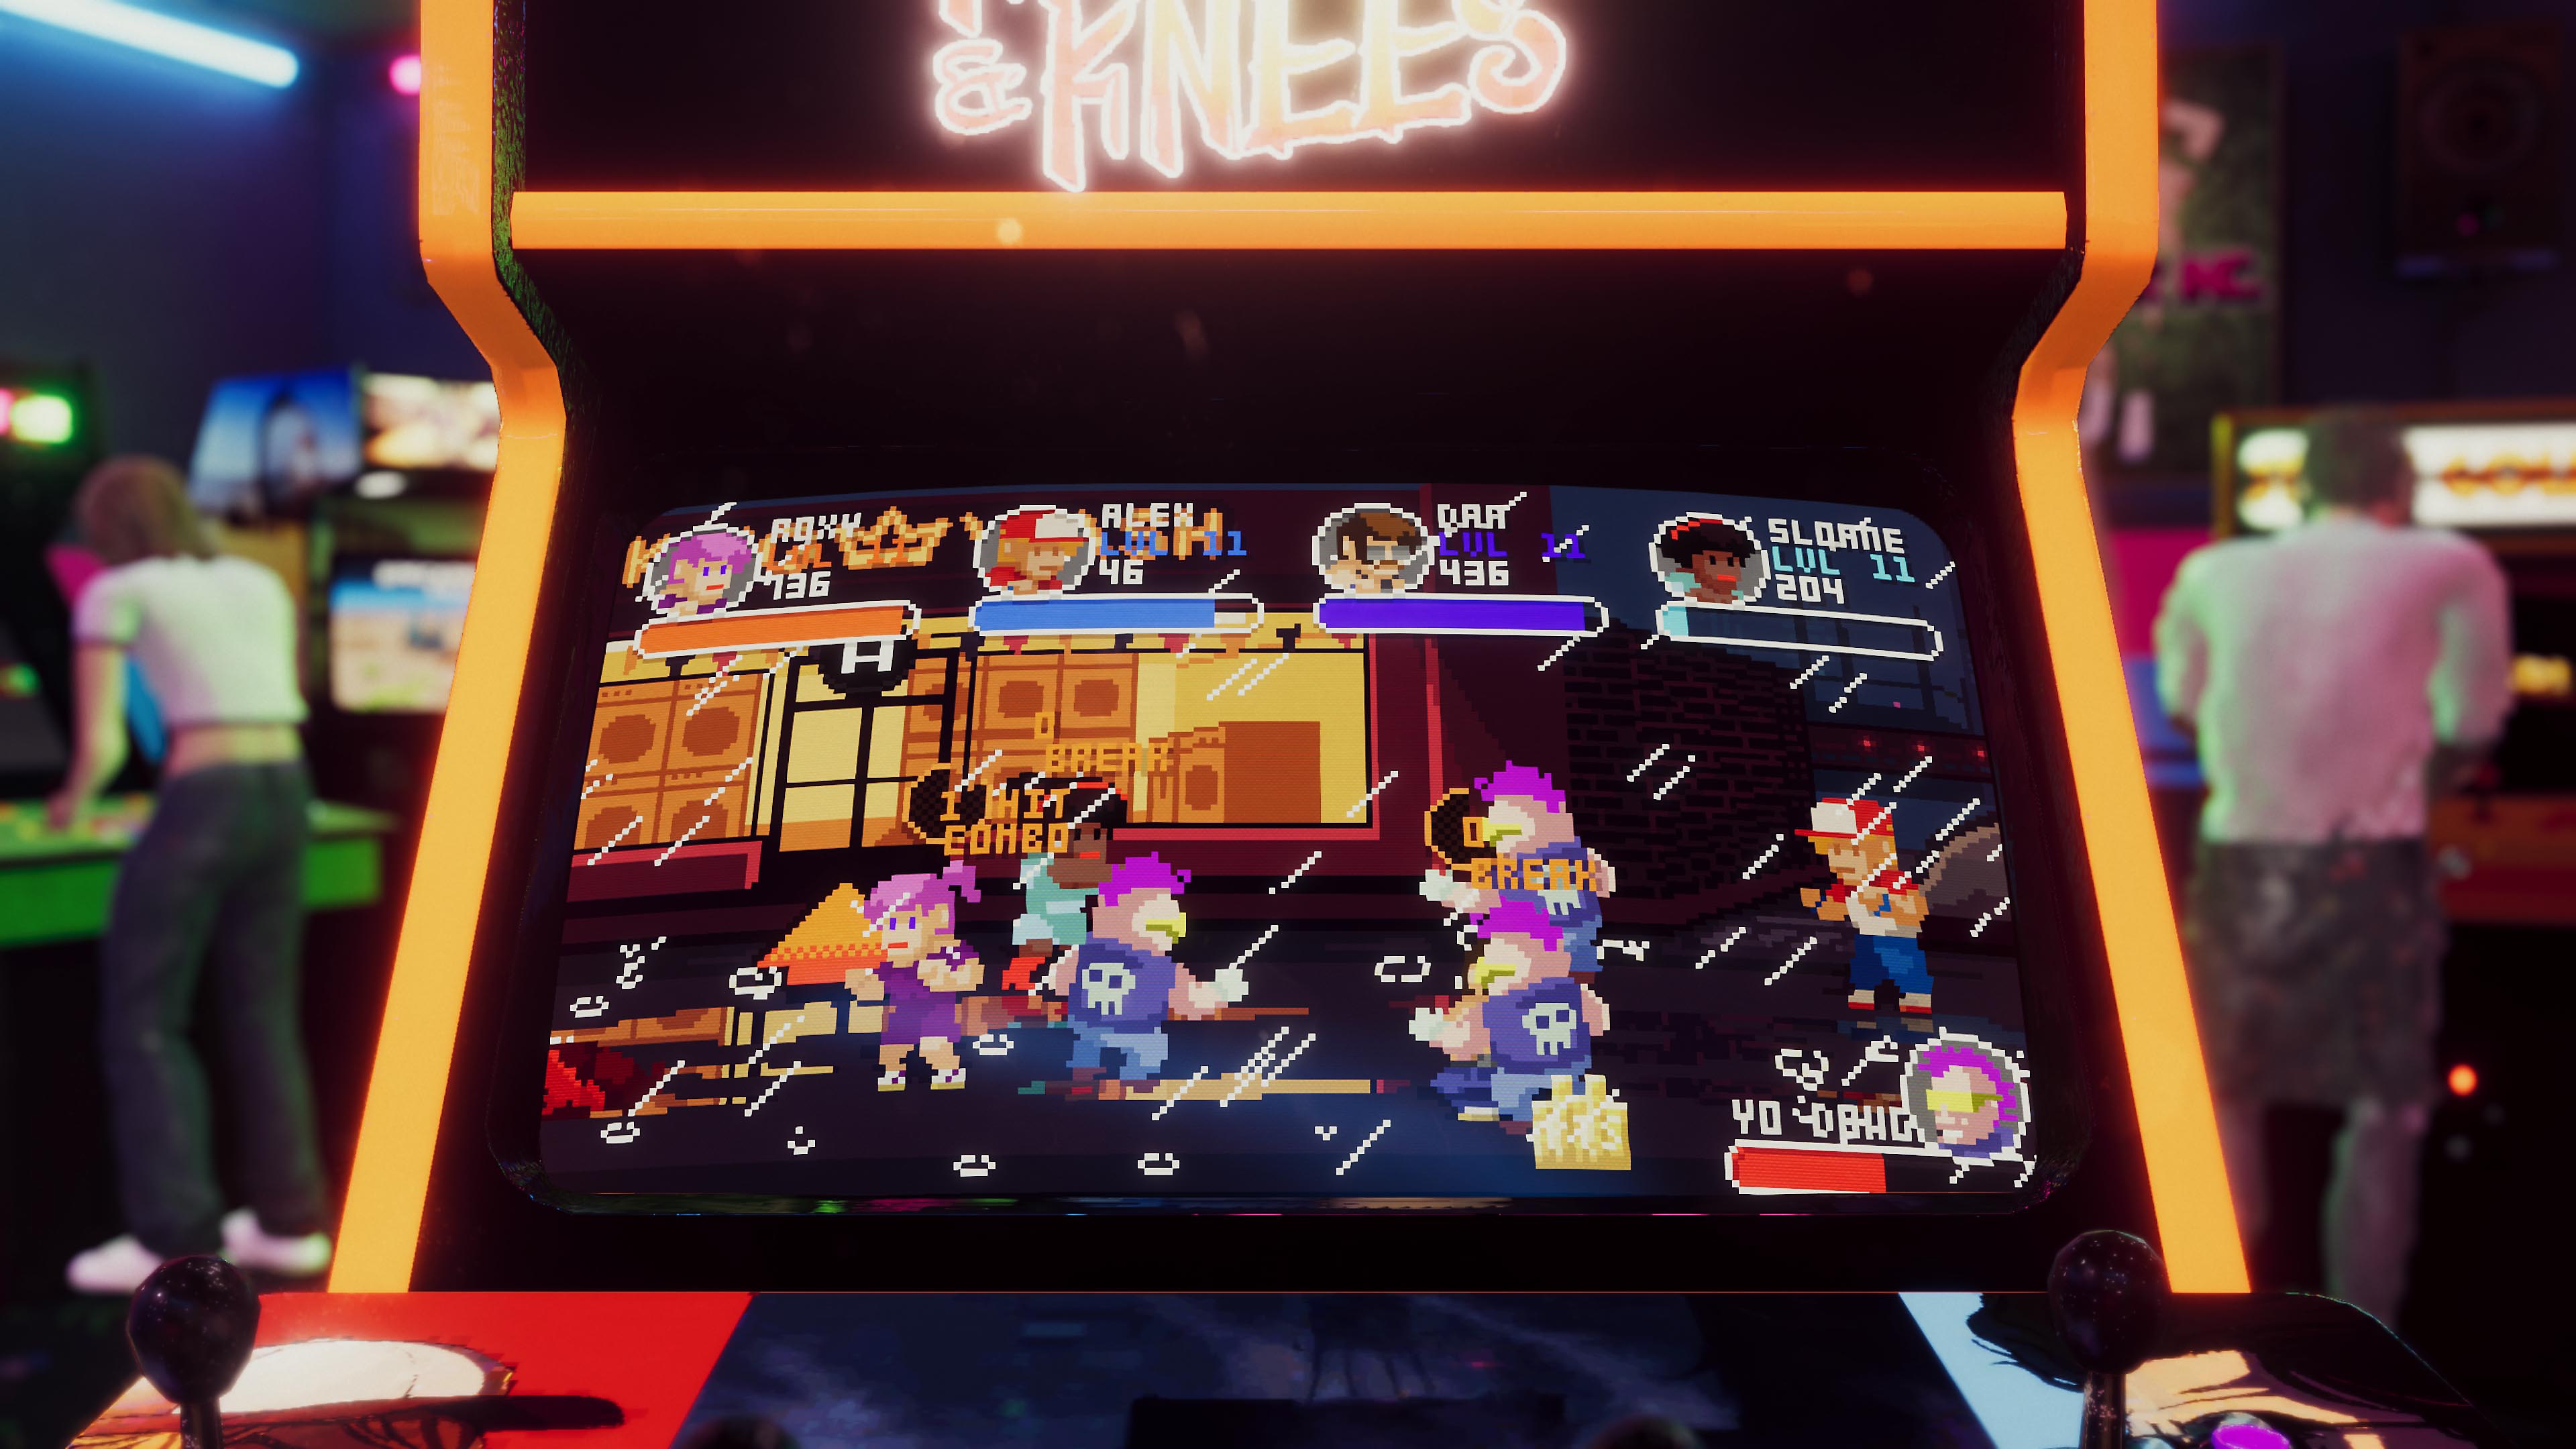 Arcade Paradise-skærmbillede, der viser en spillemaskine med et retro-arkadespil